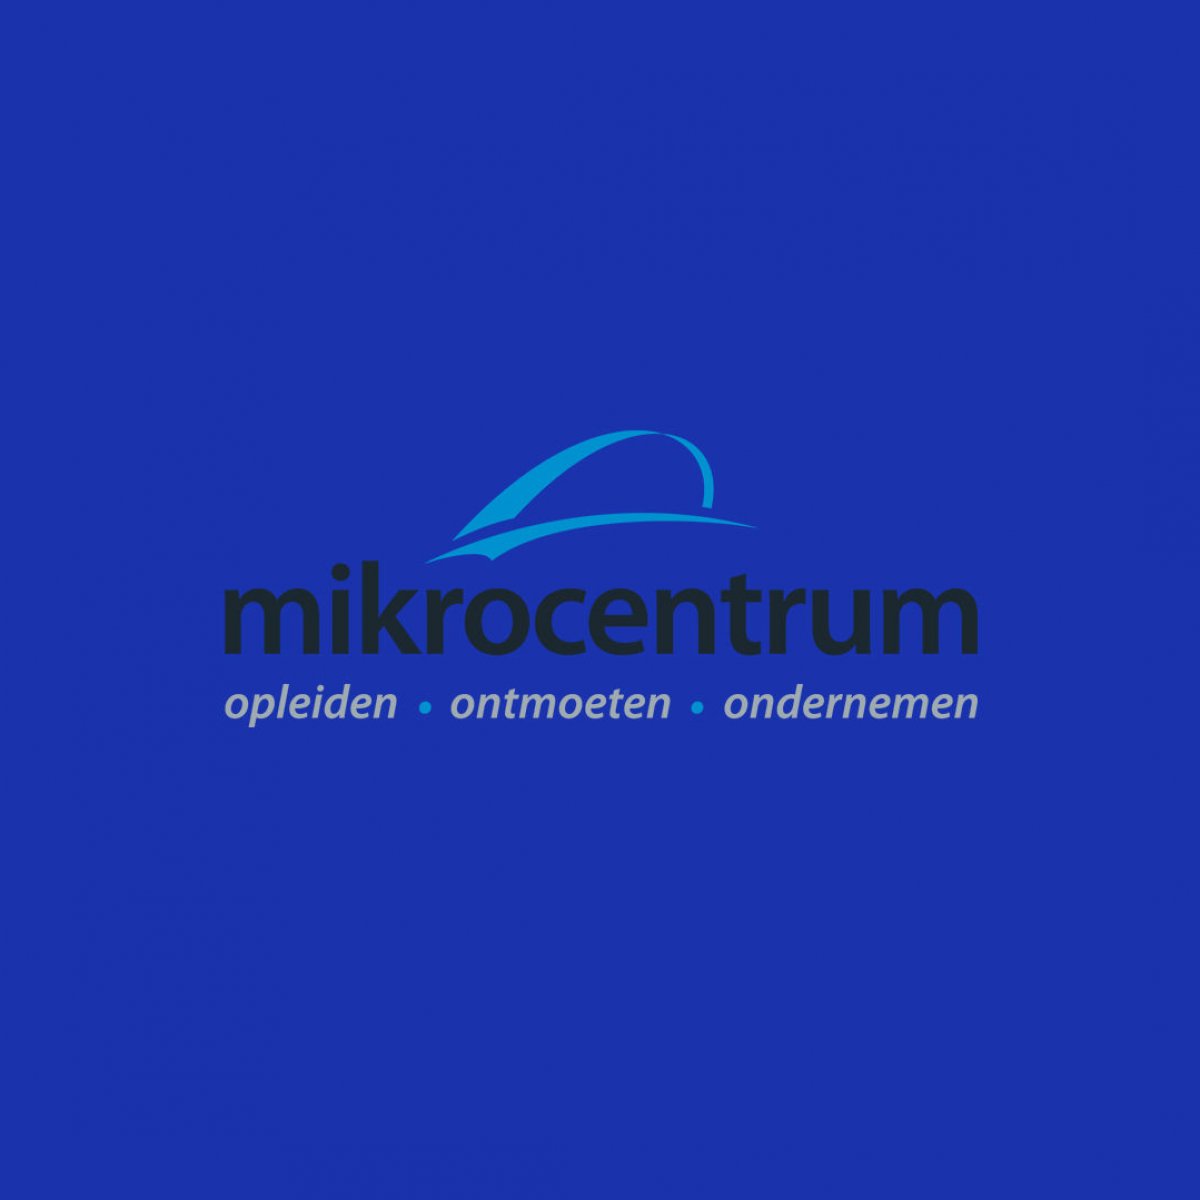 mikrocentrum.nl